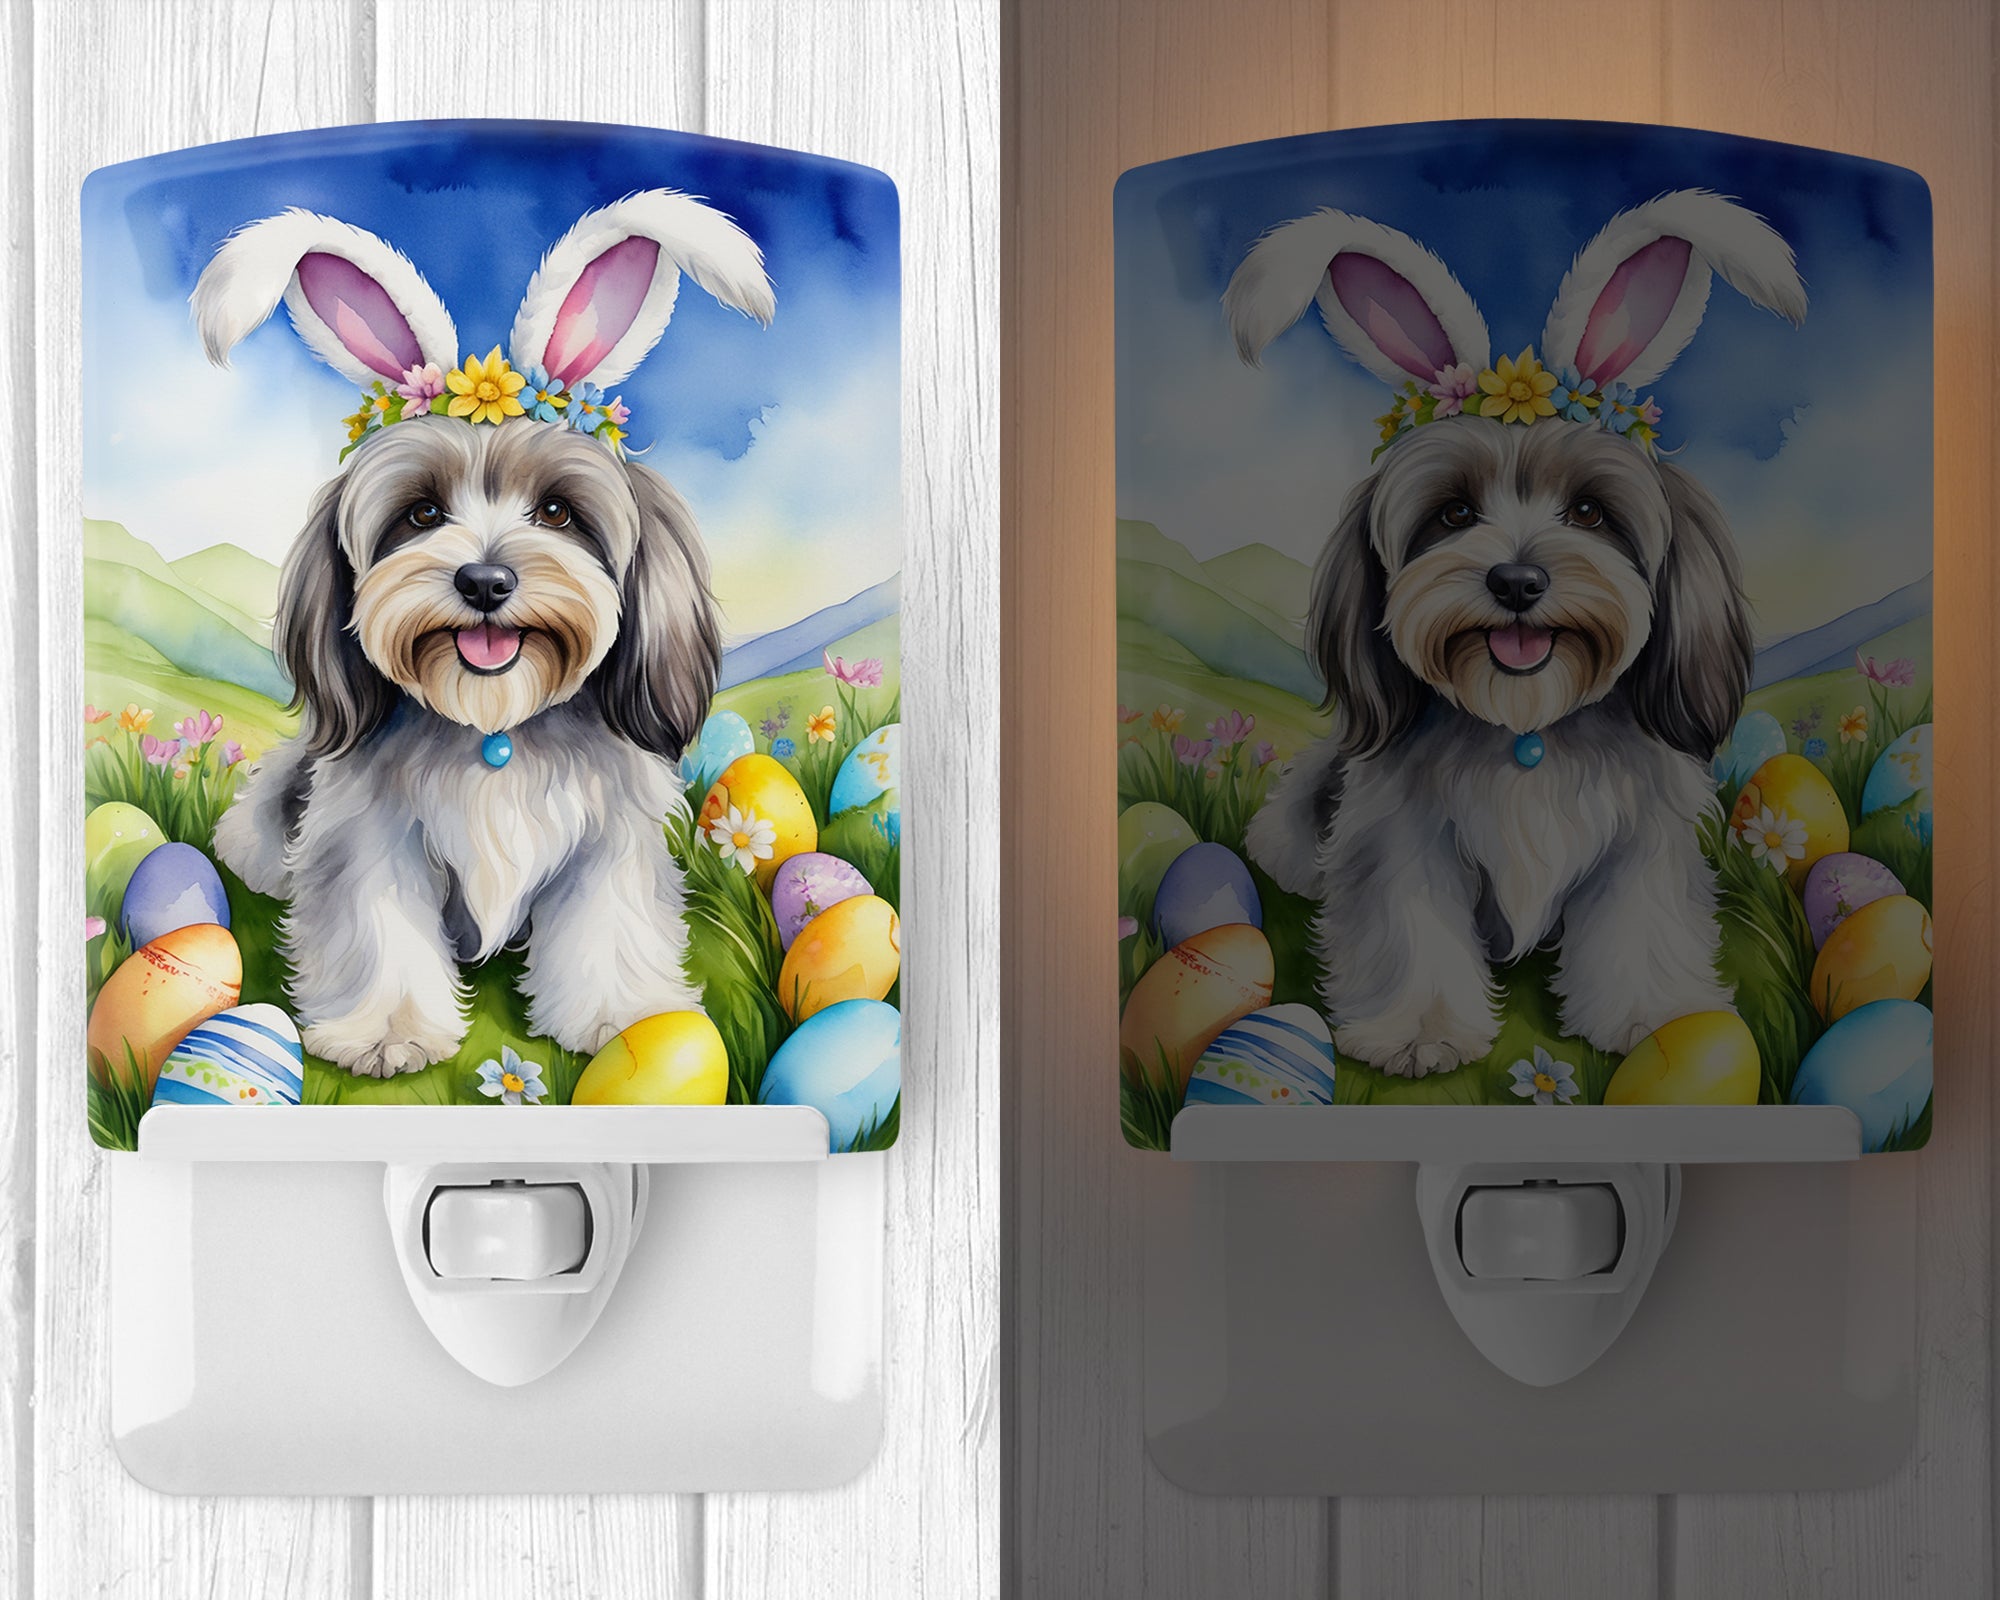 Buy this Tibetan Terrier Easter Egg Hunt Ceramic Night Light